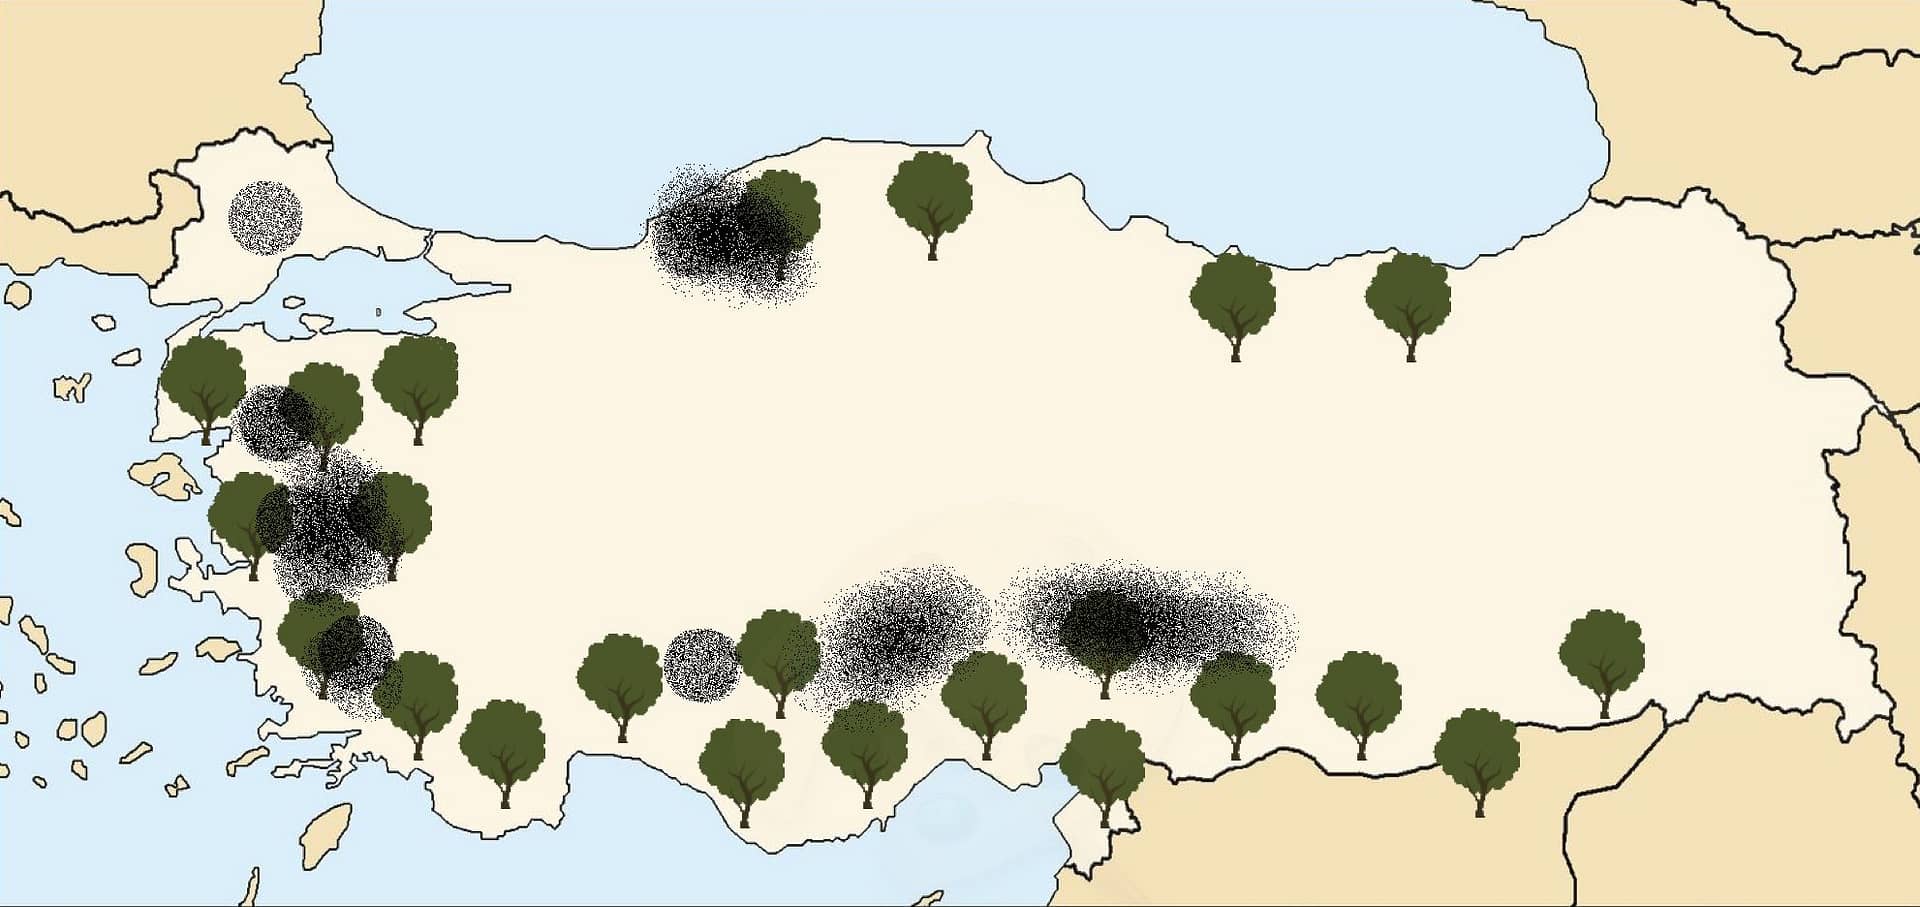 azië-business-nieuwe-regelgeving-in-turkije-vergunningen-olijfboom-verwijderingen-voor-kolenwinning-olijfolie-tijden